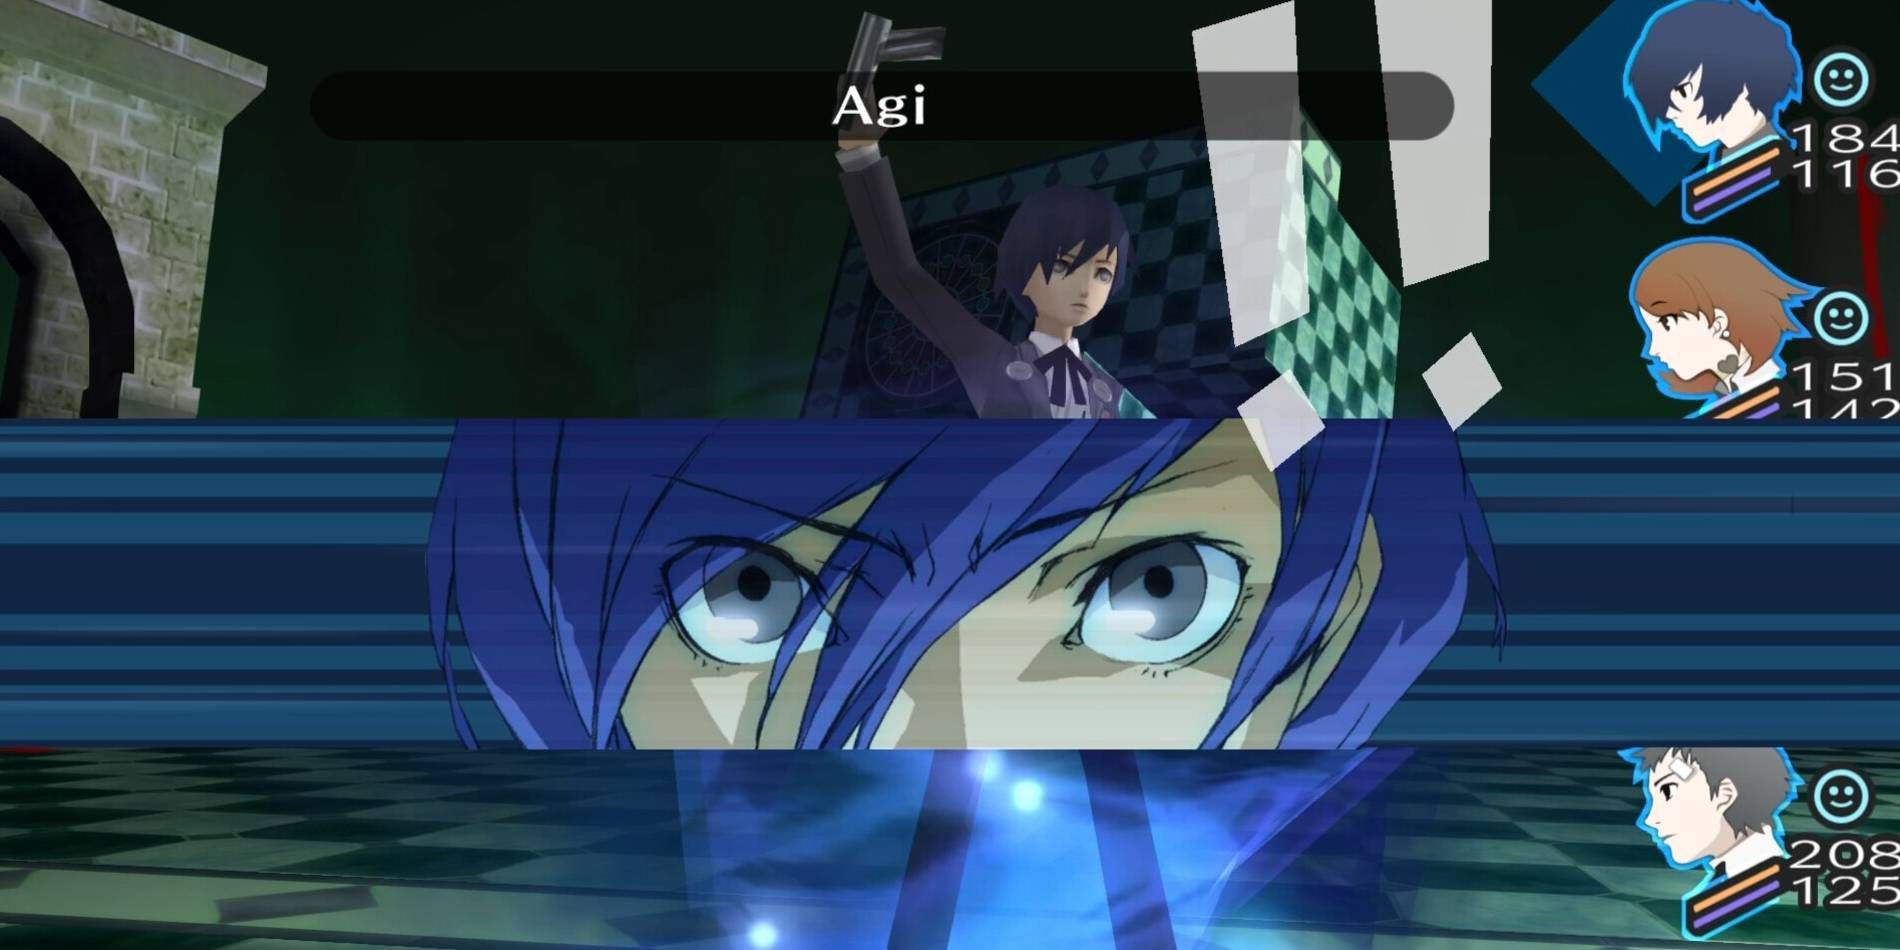 Protagonista masculino portátil de Persona 3 usando la habilidad de Persona Agi con otros miembros del grupo HP y SP mostrados